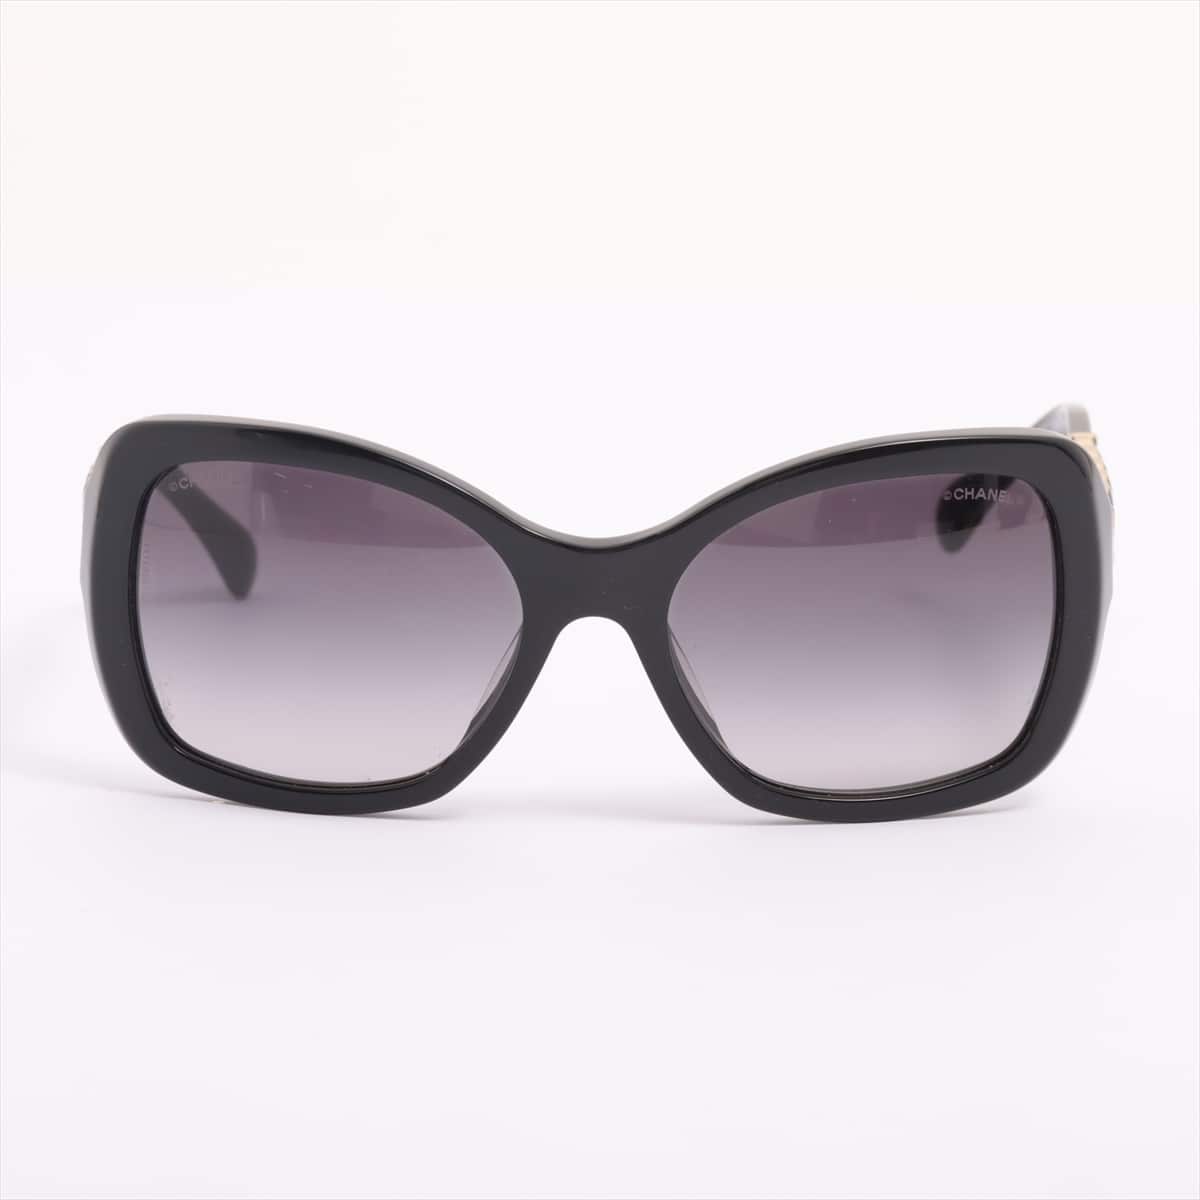 Chanel 5305-A Coco Mark Sunglasses Plastic Black